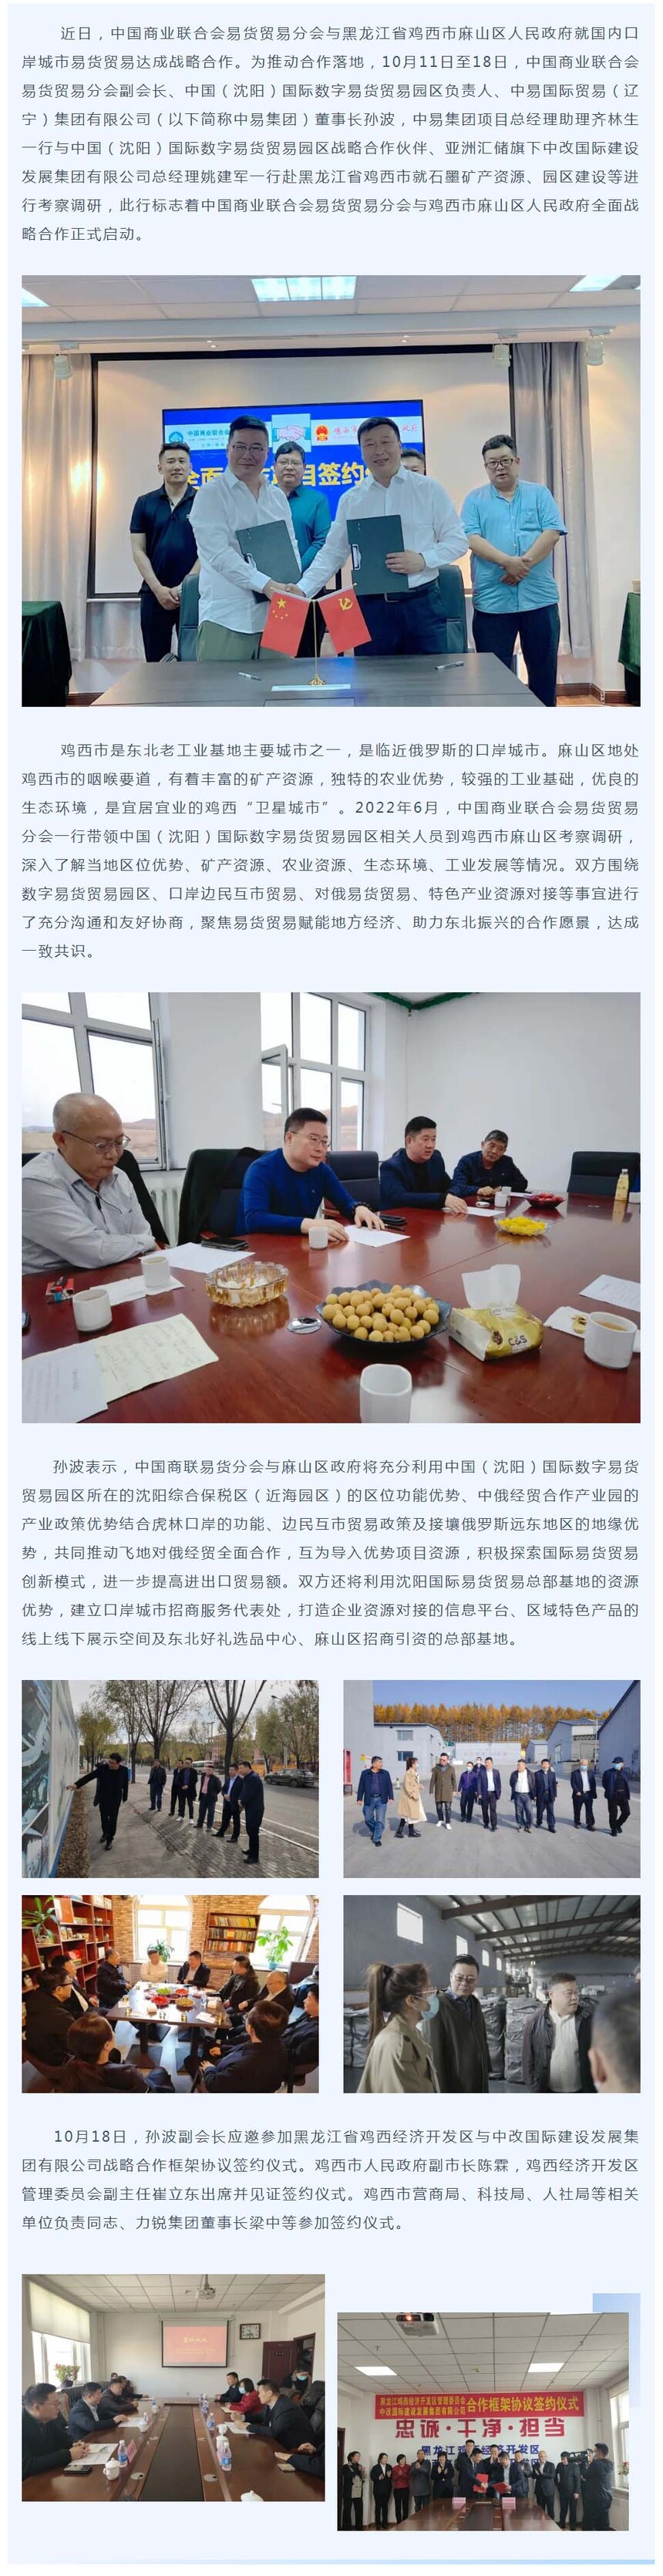 中国商联易货分会与鸡西市麻山区人民政府达成战略合作副本.jpg